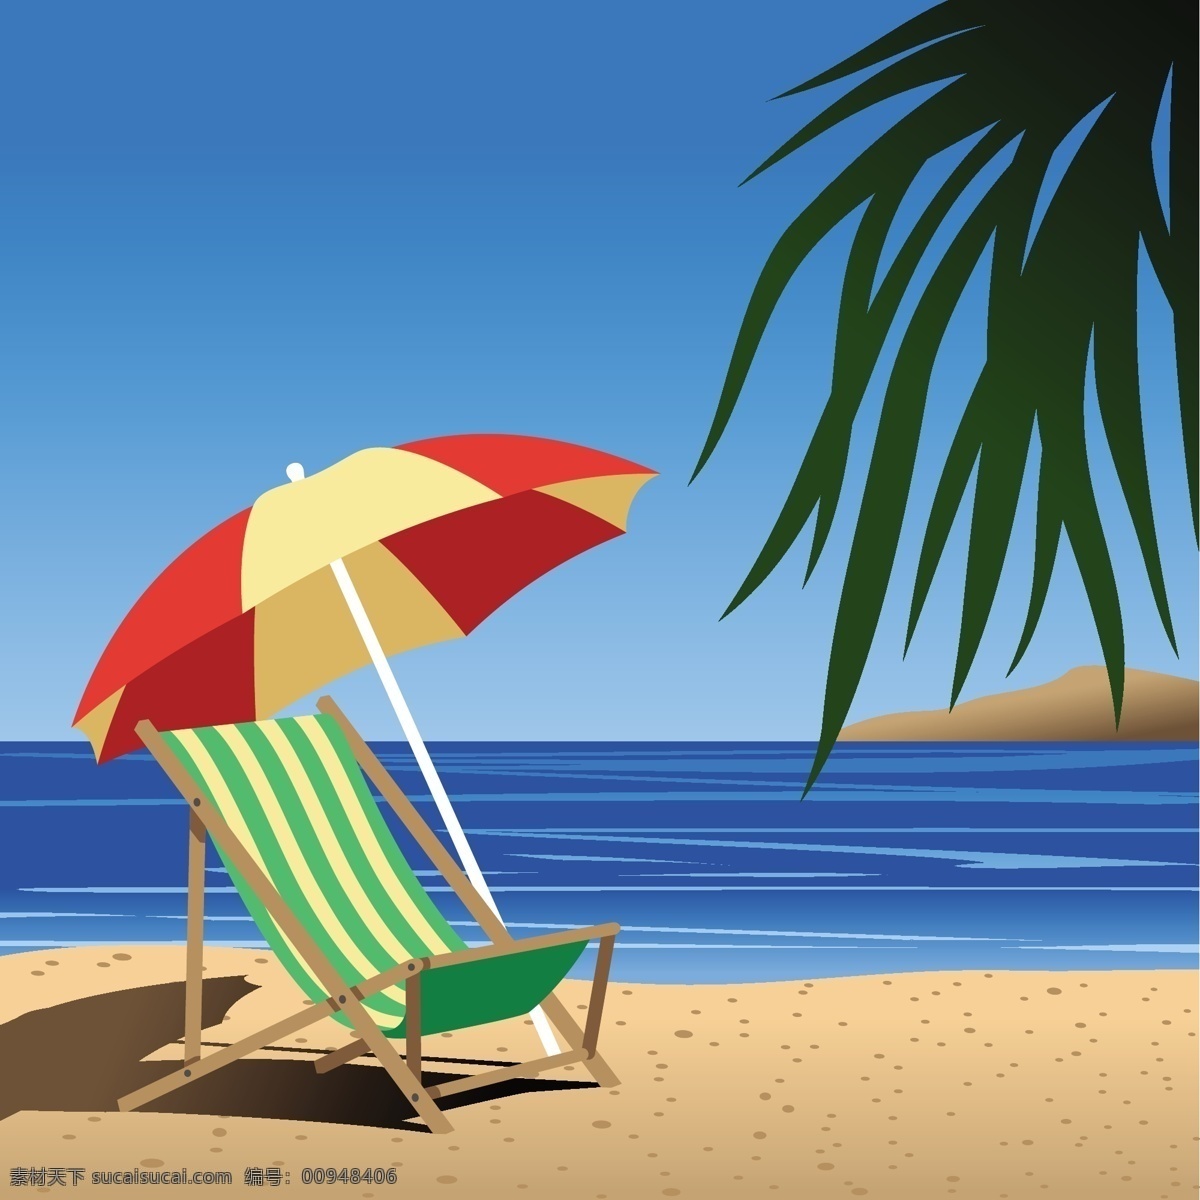 海边风光 沙滩椅 海滩免费下载 矢量图 其他矢量图